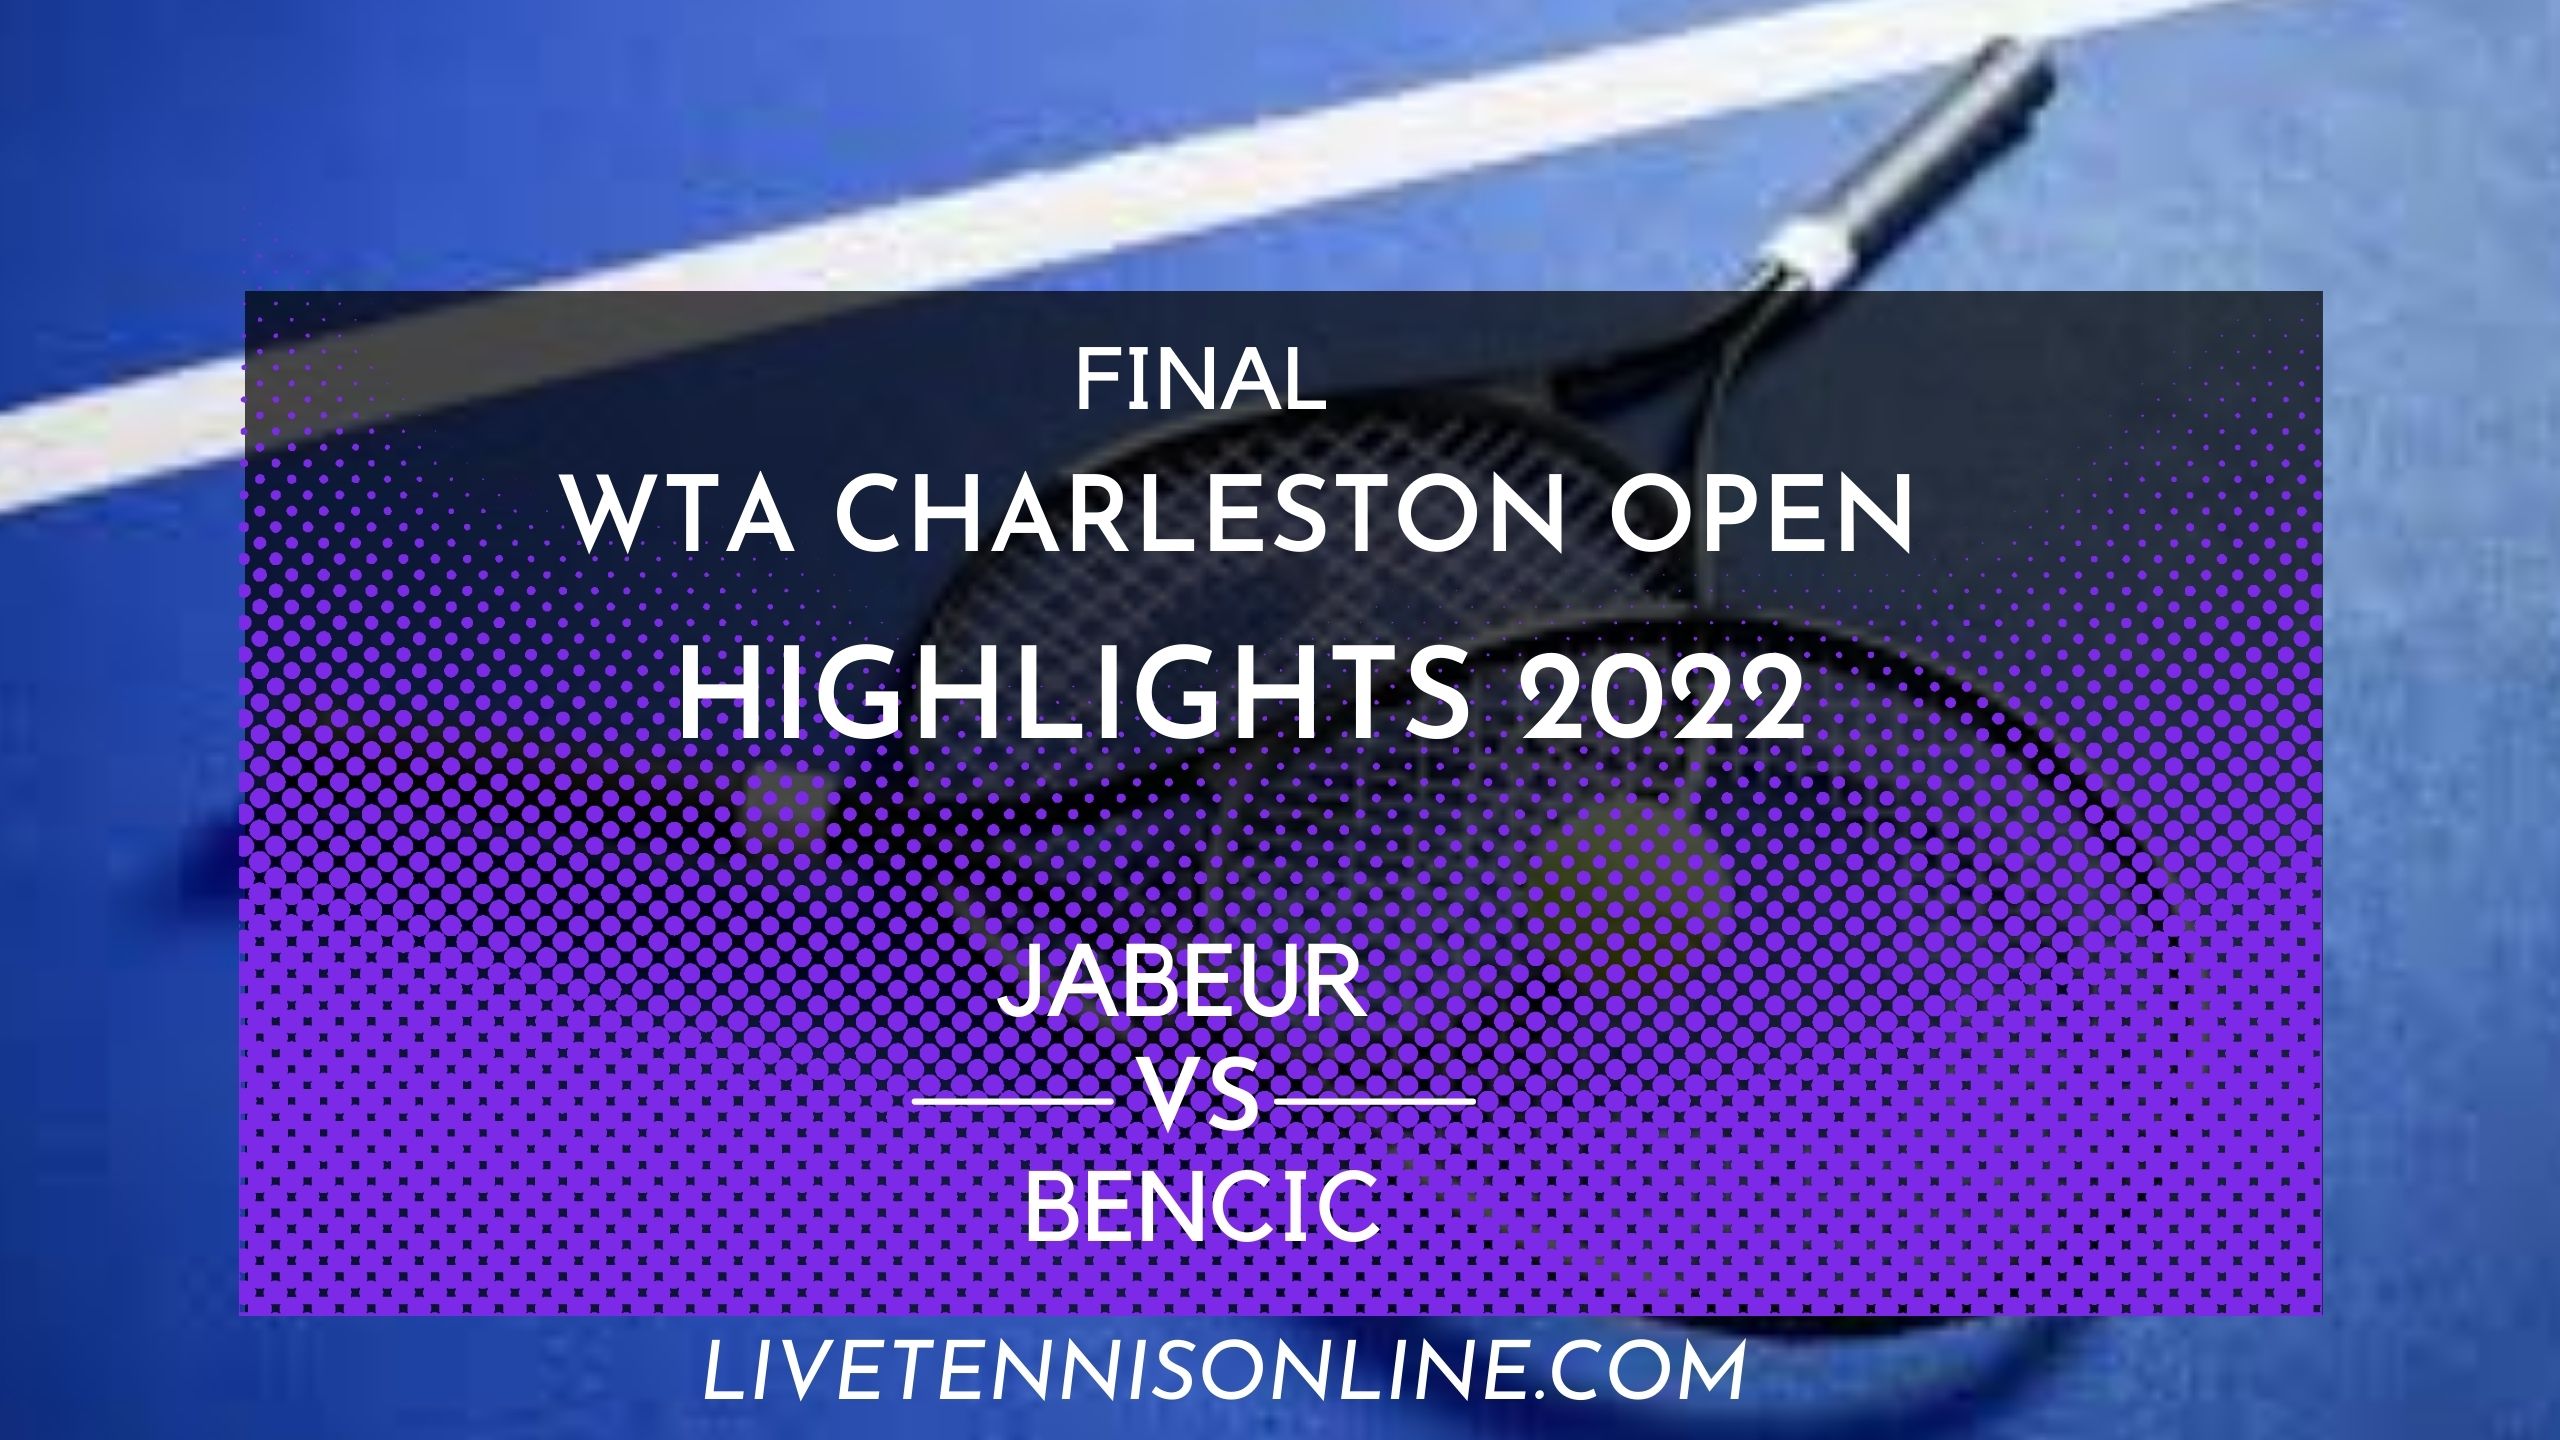 Jabeur Vs Bencic Final Highlights 2022